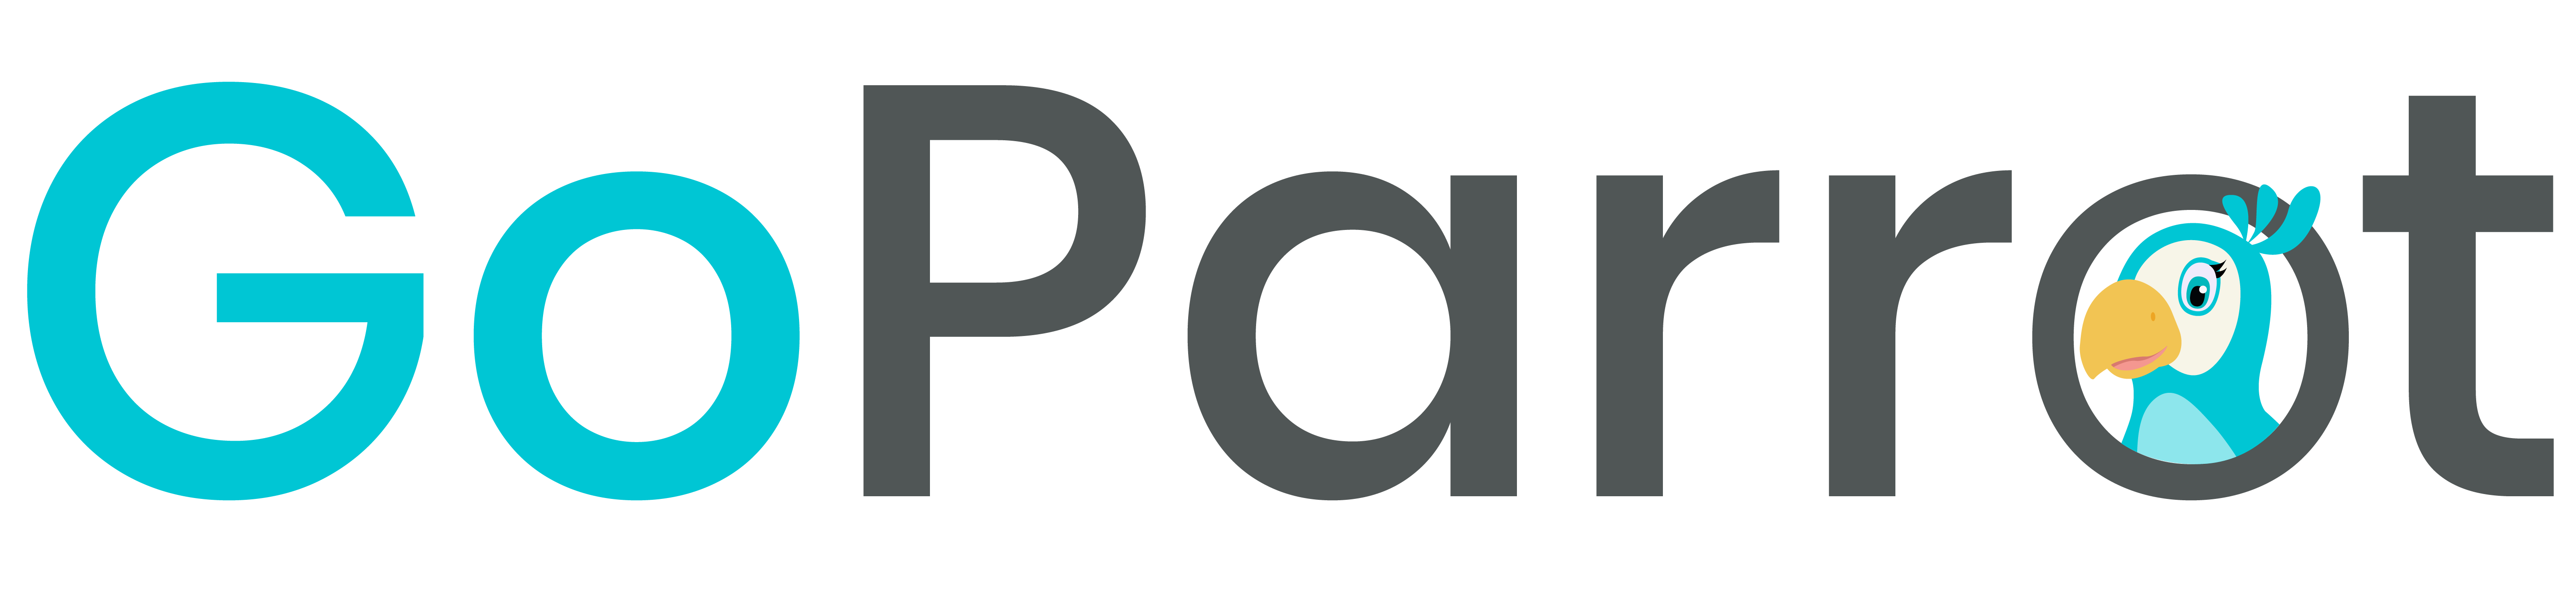 GP_logotype.png